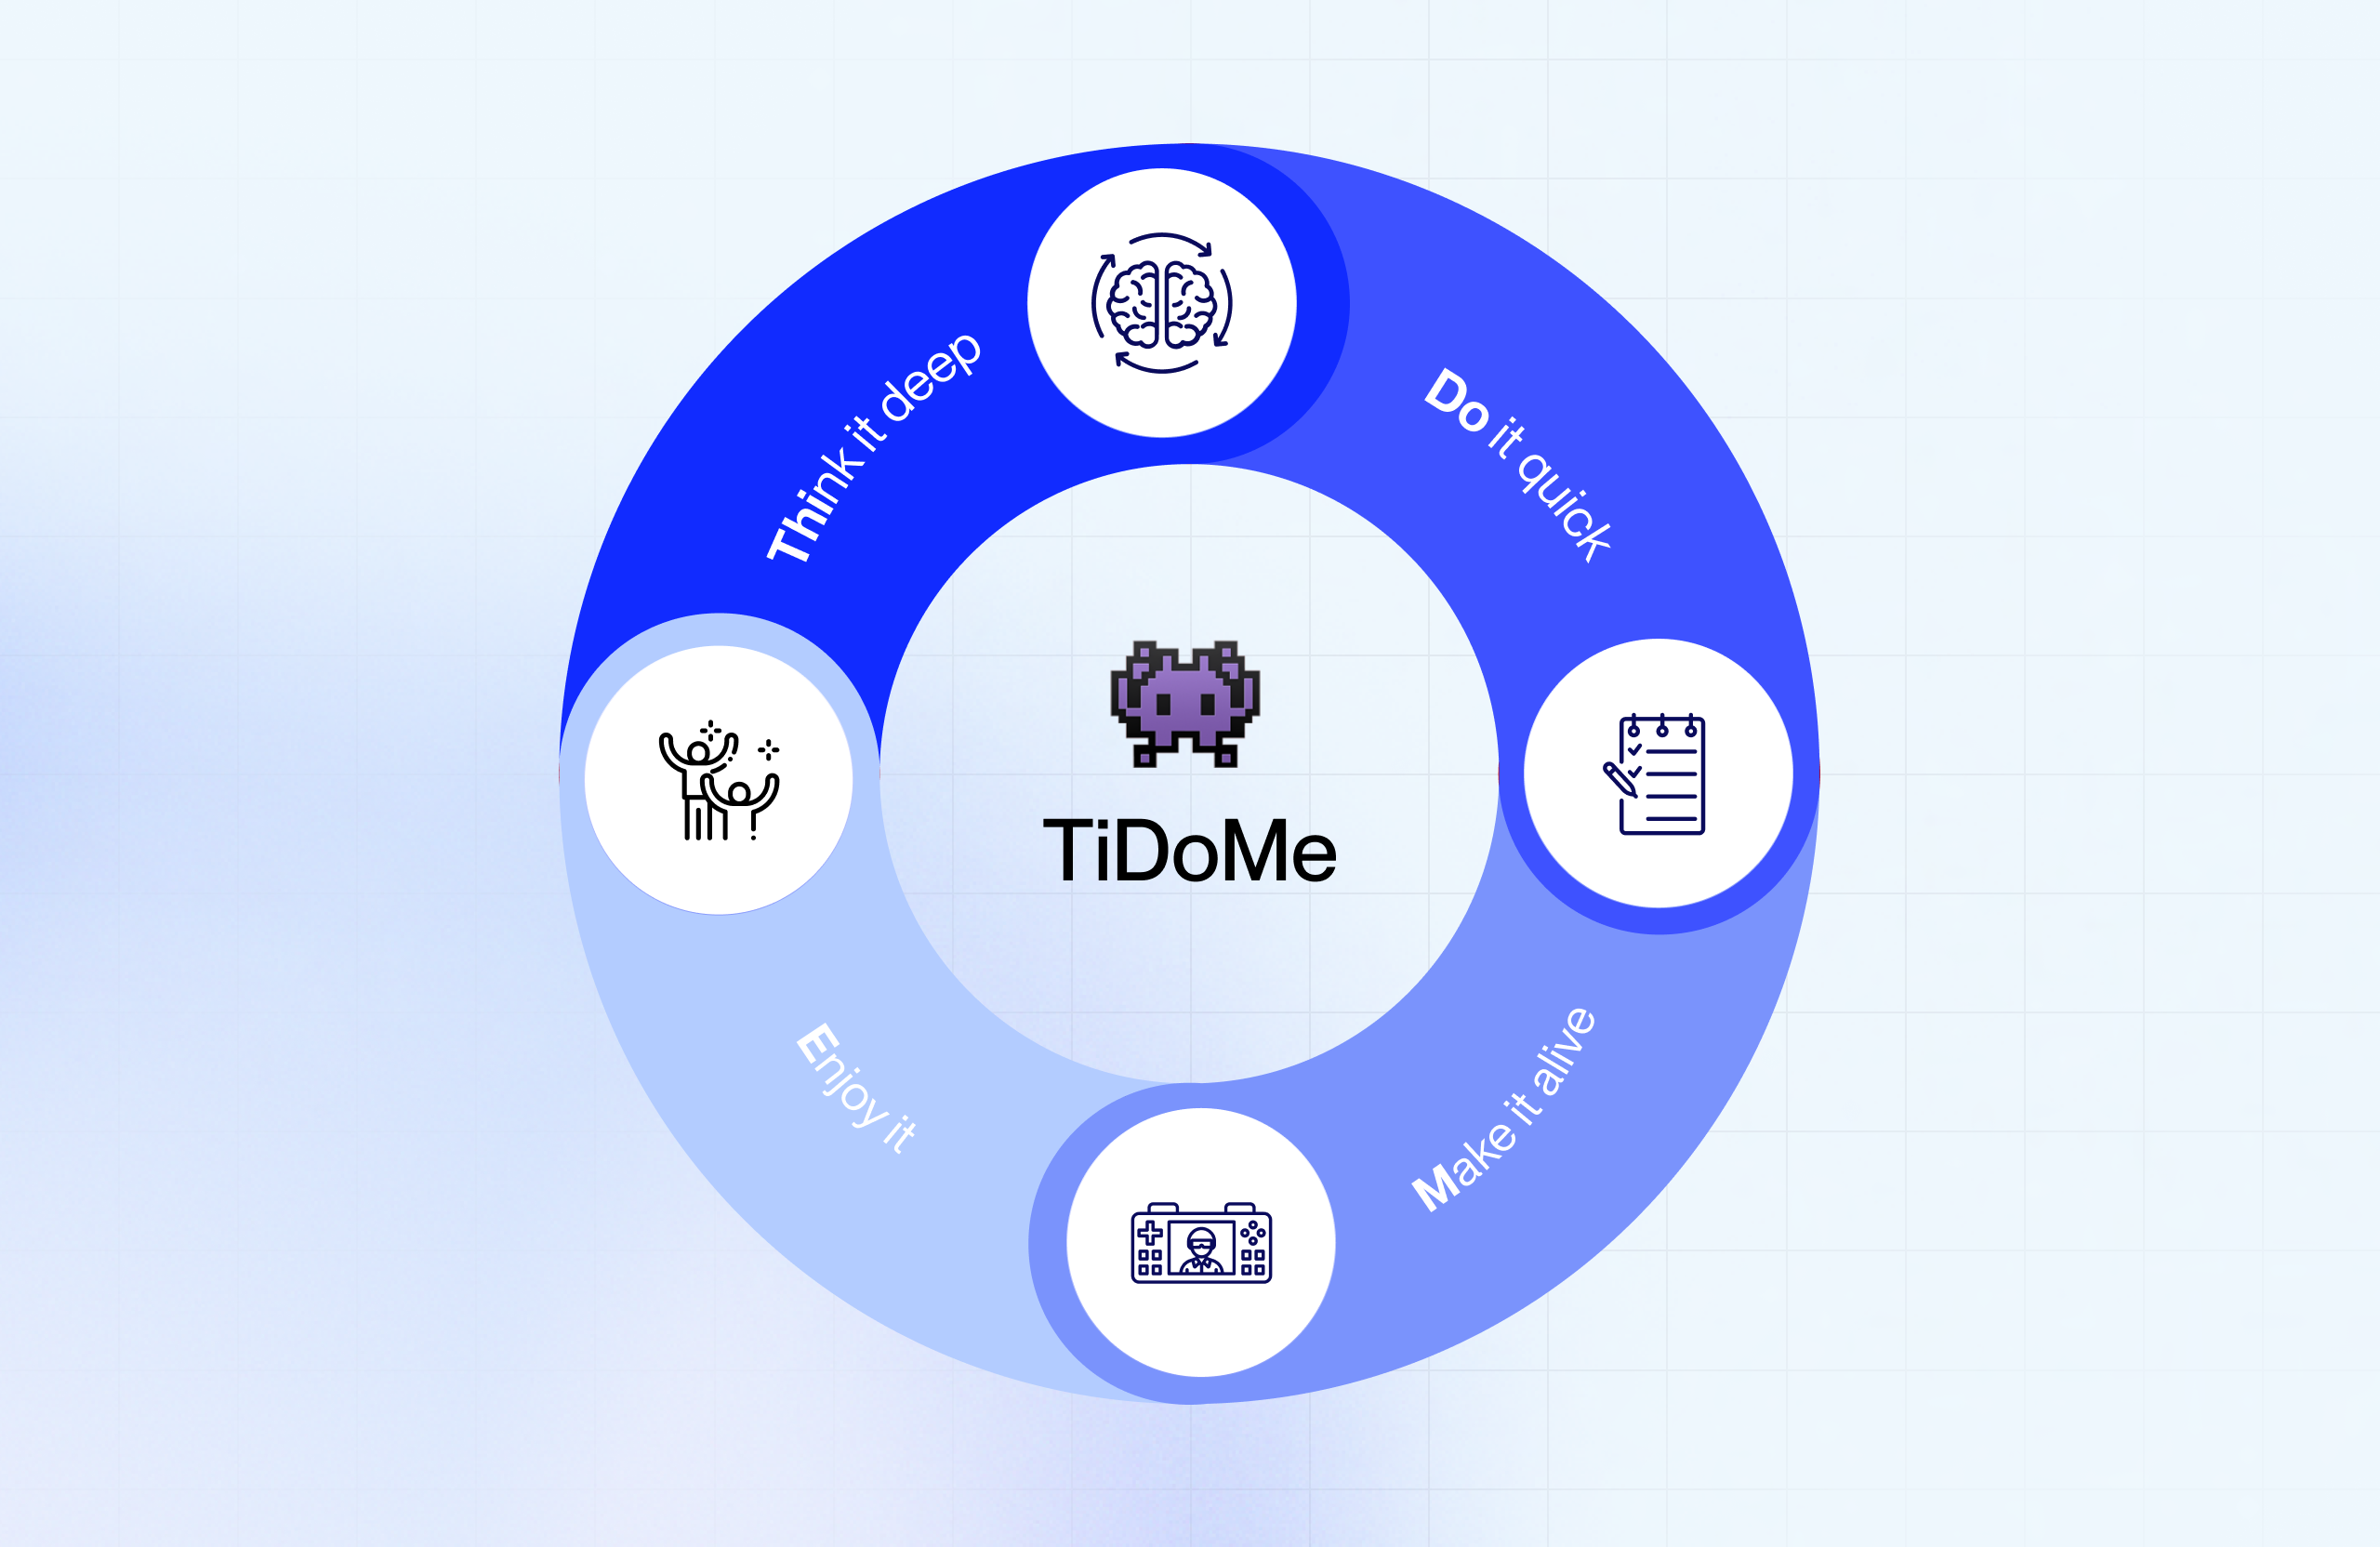 Le concept de "TiDoME" est parfait pour réussir la stratégie de gamification de votre application mobile  !